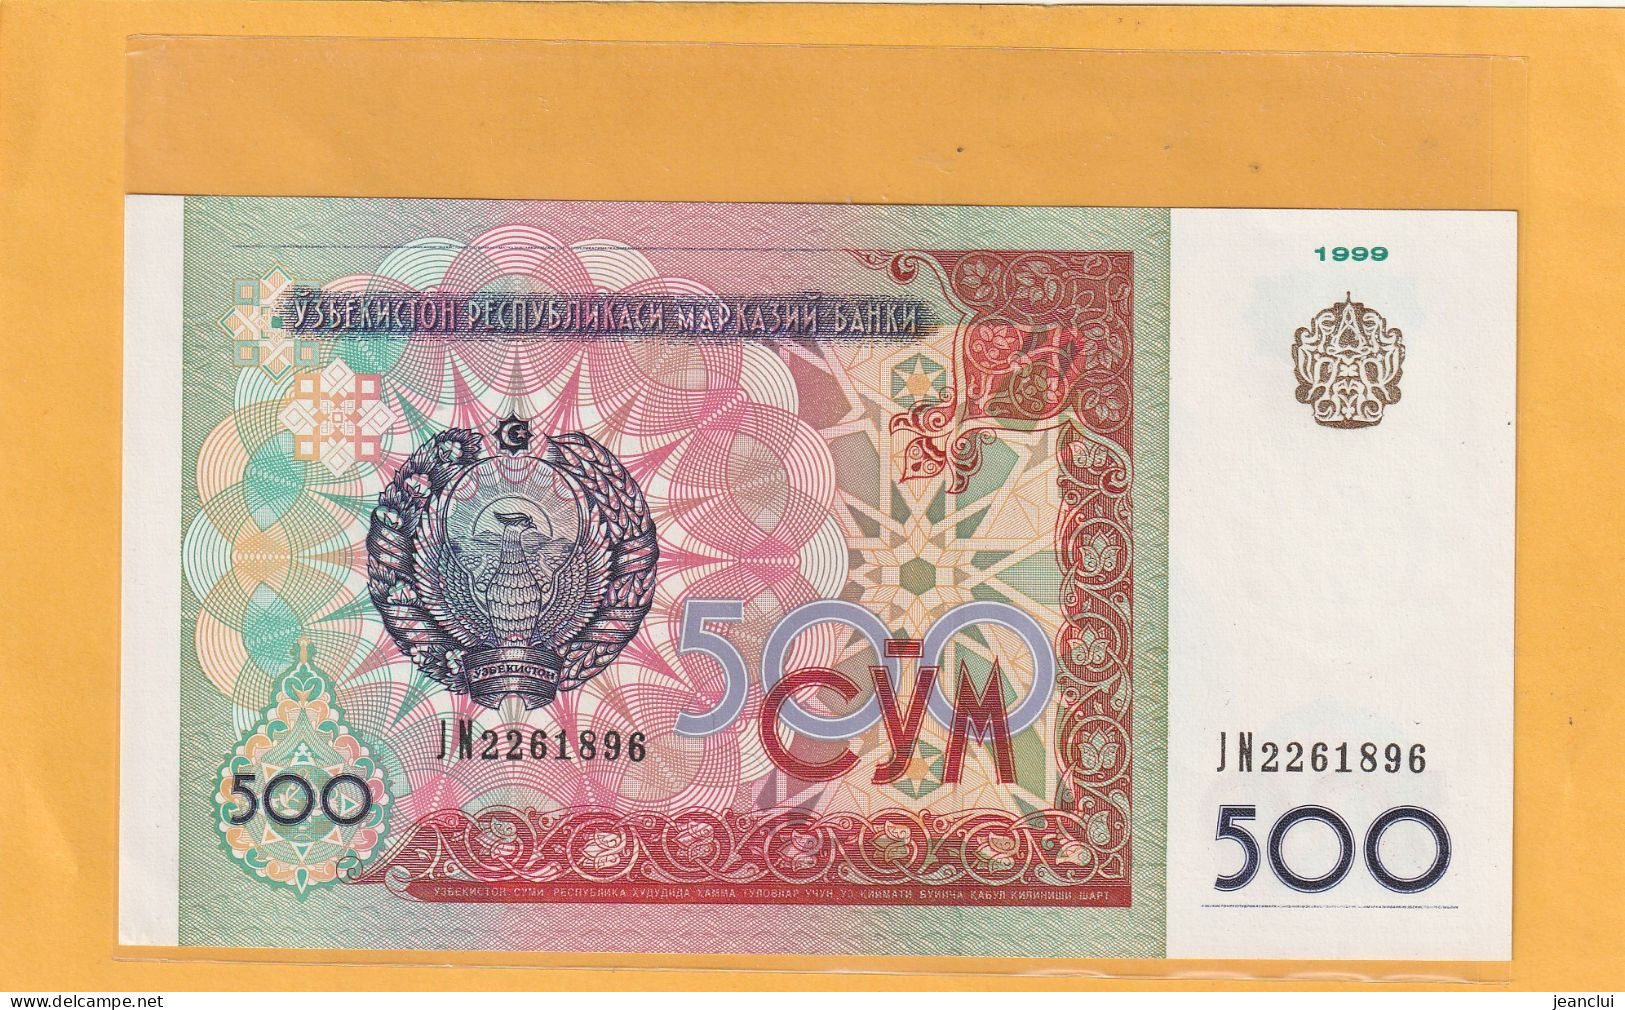 OUZBEKISTAN  .  500 CYM  .  1999   . N°  JN 2261896  .  2 SCANNES  .  BILLET ETAT LUXE - Usbekistan